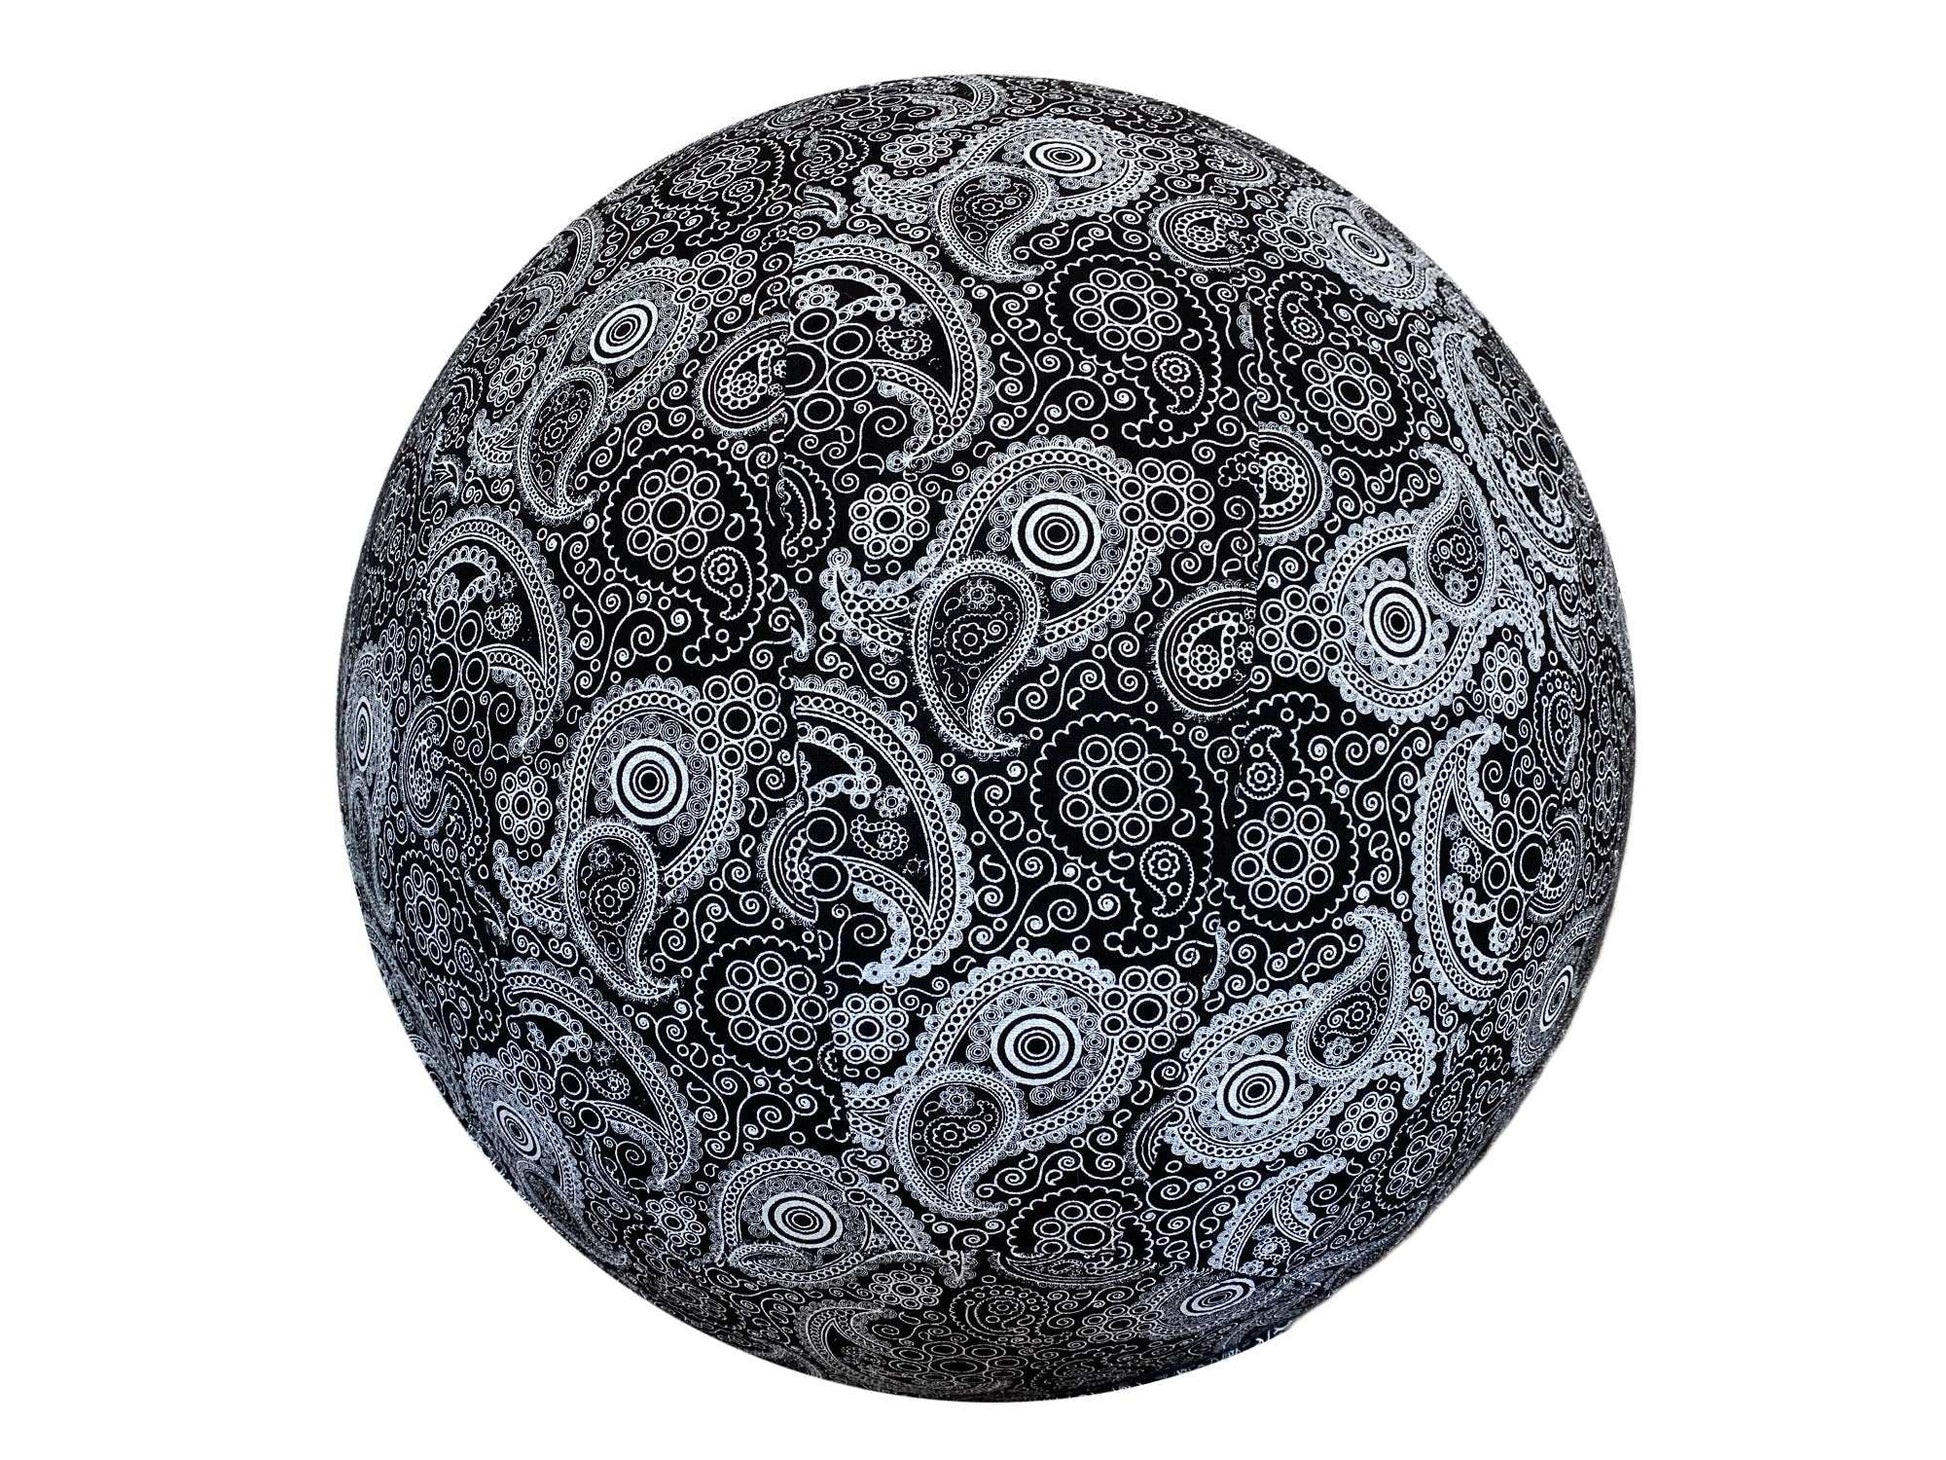 65cm Balance Ball / Yoga Ball Cover: Black Paisley